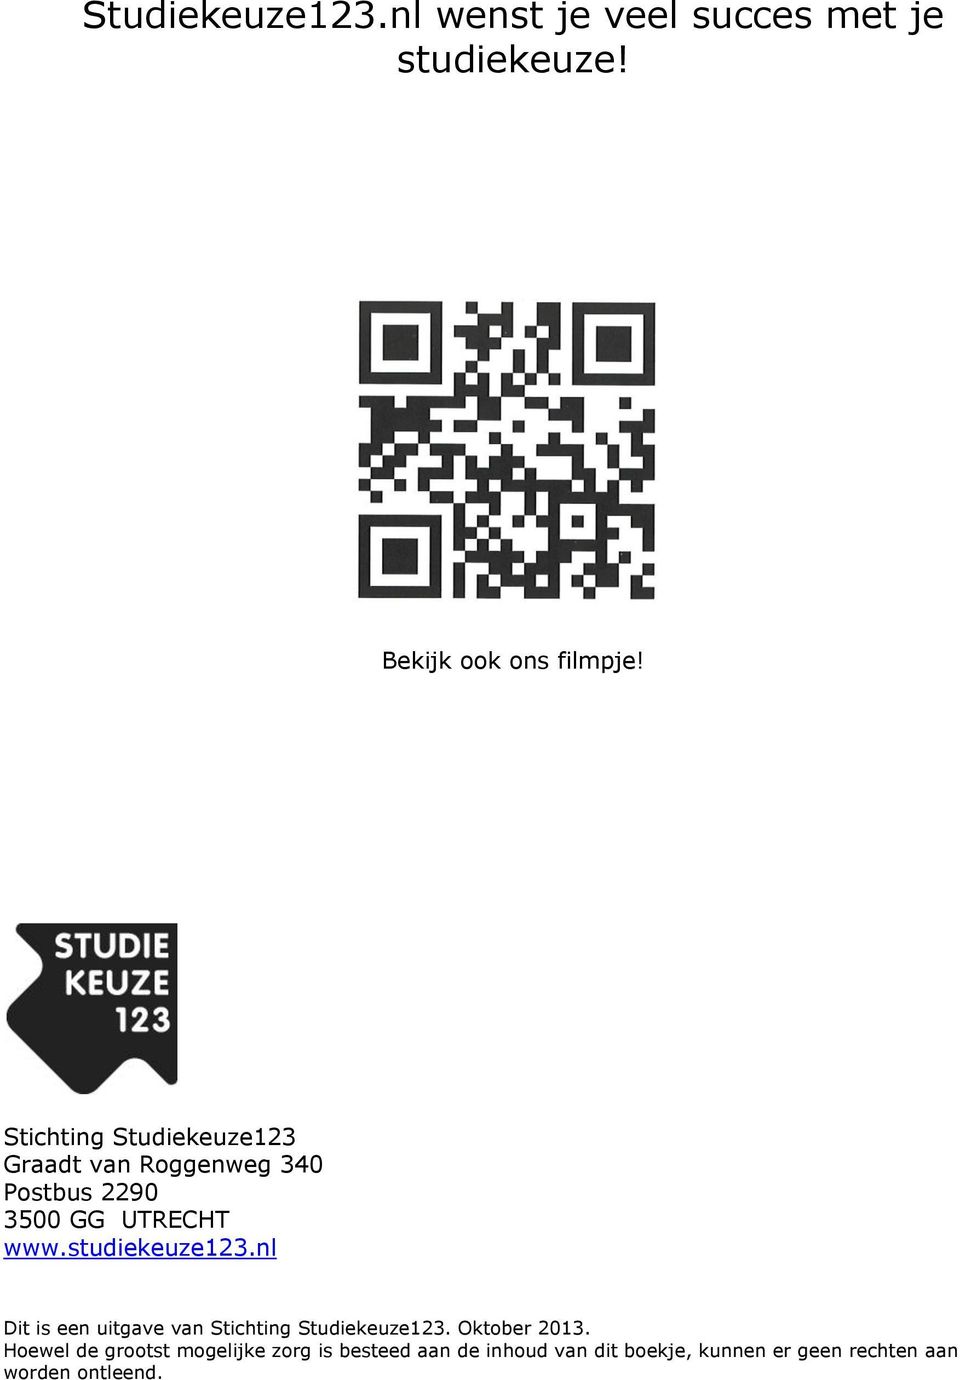 studiekeuze123.nl Dit is een uitgave van Stichting Studiekeuze123. Oktober 2013.